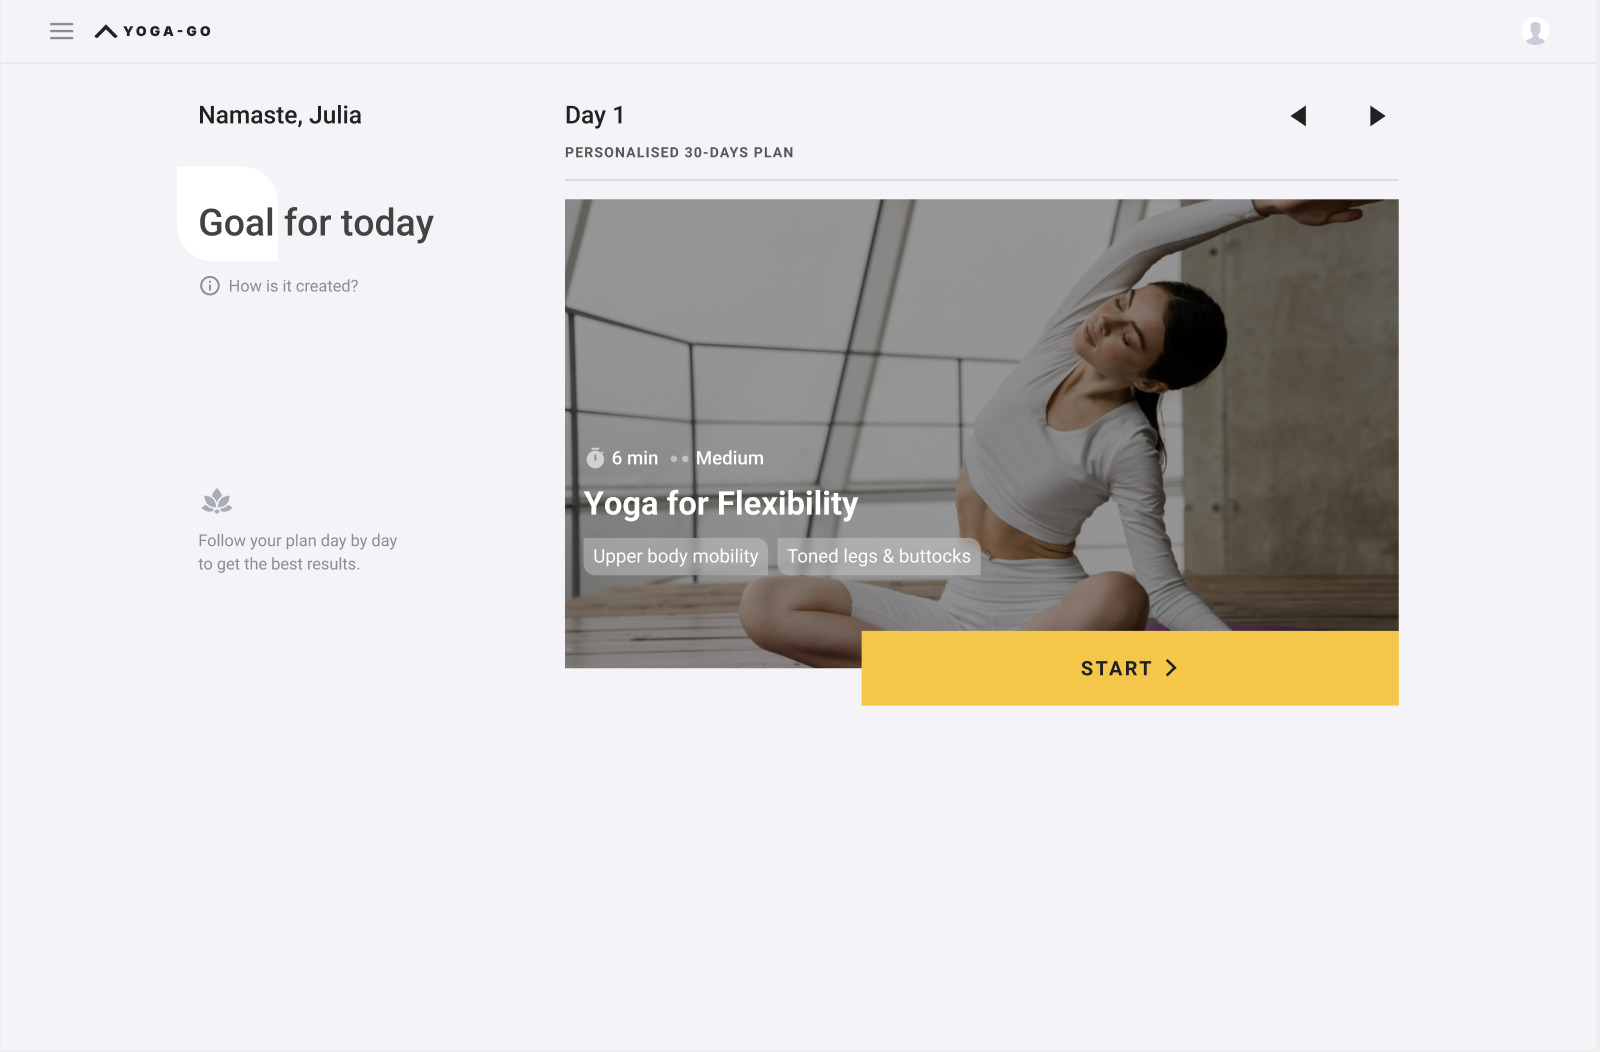 Yoga-Go Reviews  Read Customer Service Reviews of yoga-go.io